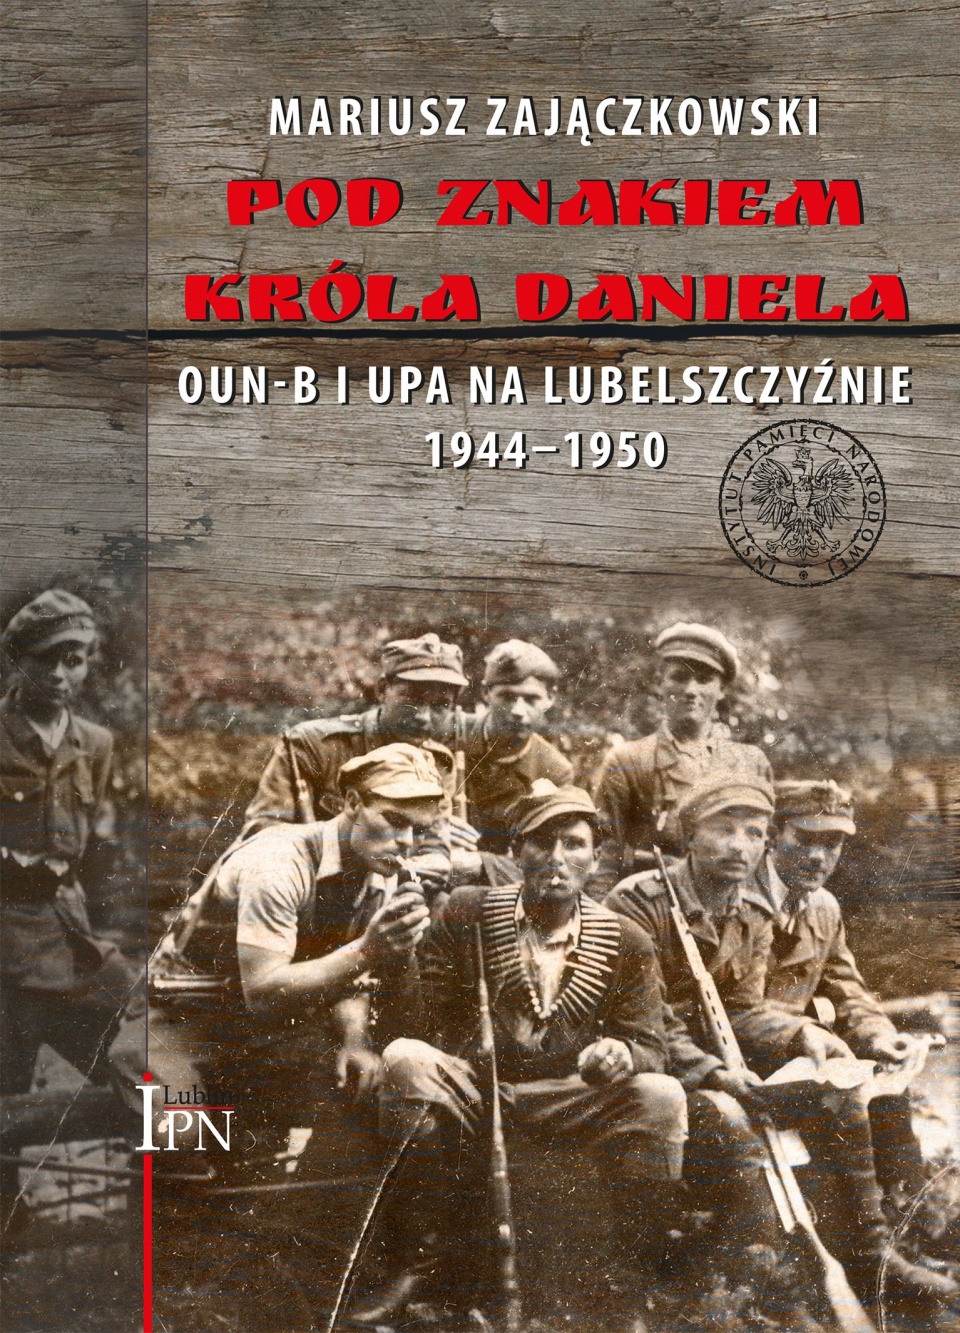 Mariusz Zajączkowski „Pod znakiem króla Daniela. OUN-B i UPA na Lubelszczyźnie 1944–1950”